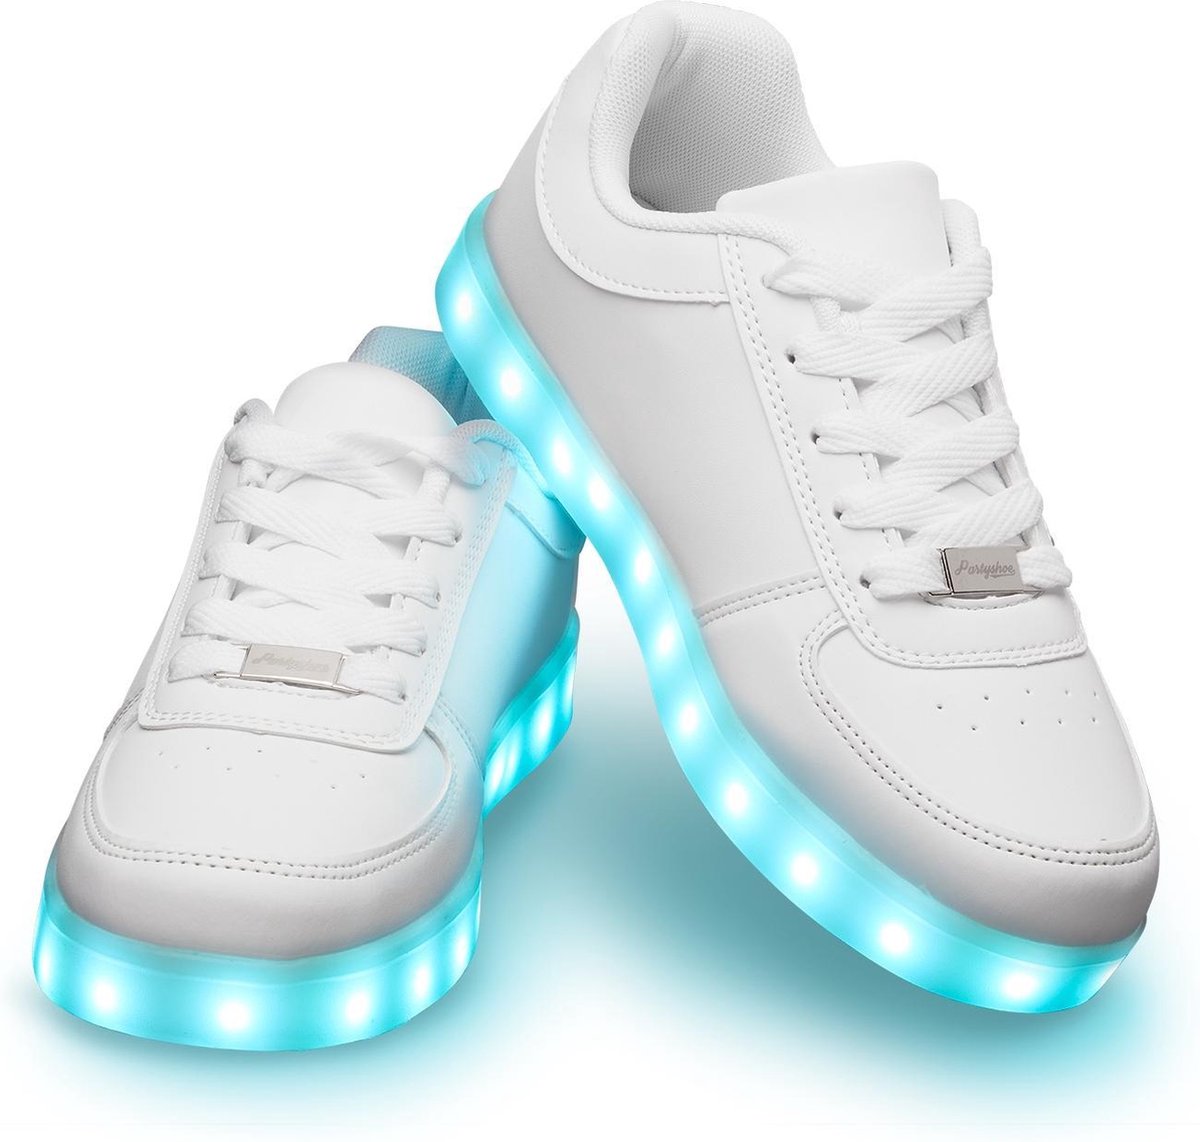 Schoenen met lichtjes - Lichtgevende led schoenen - Wit - Maat 44